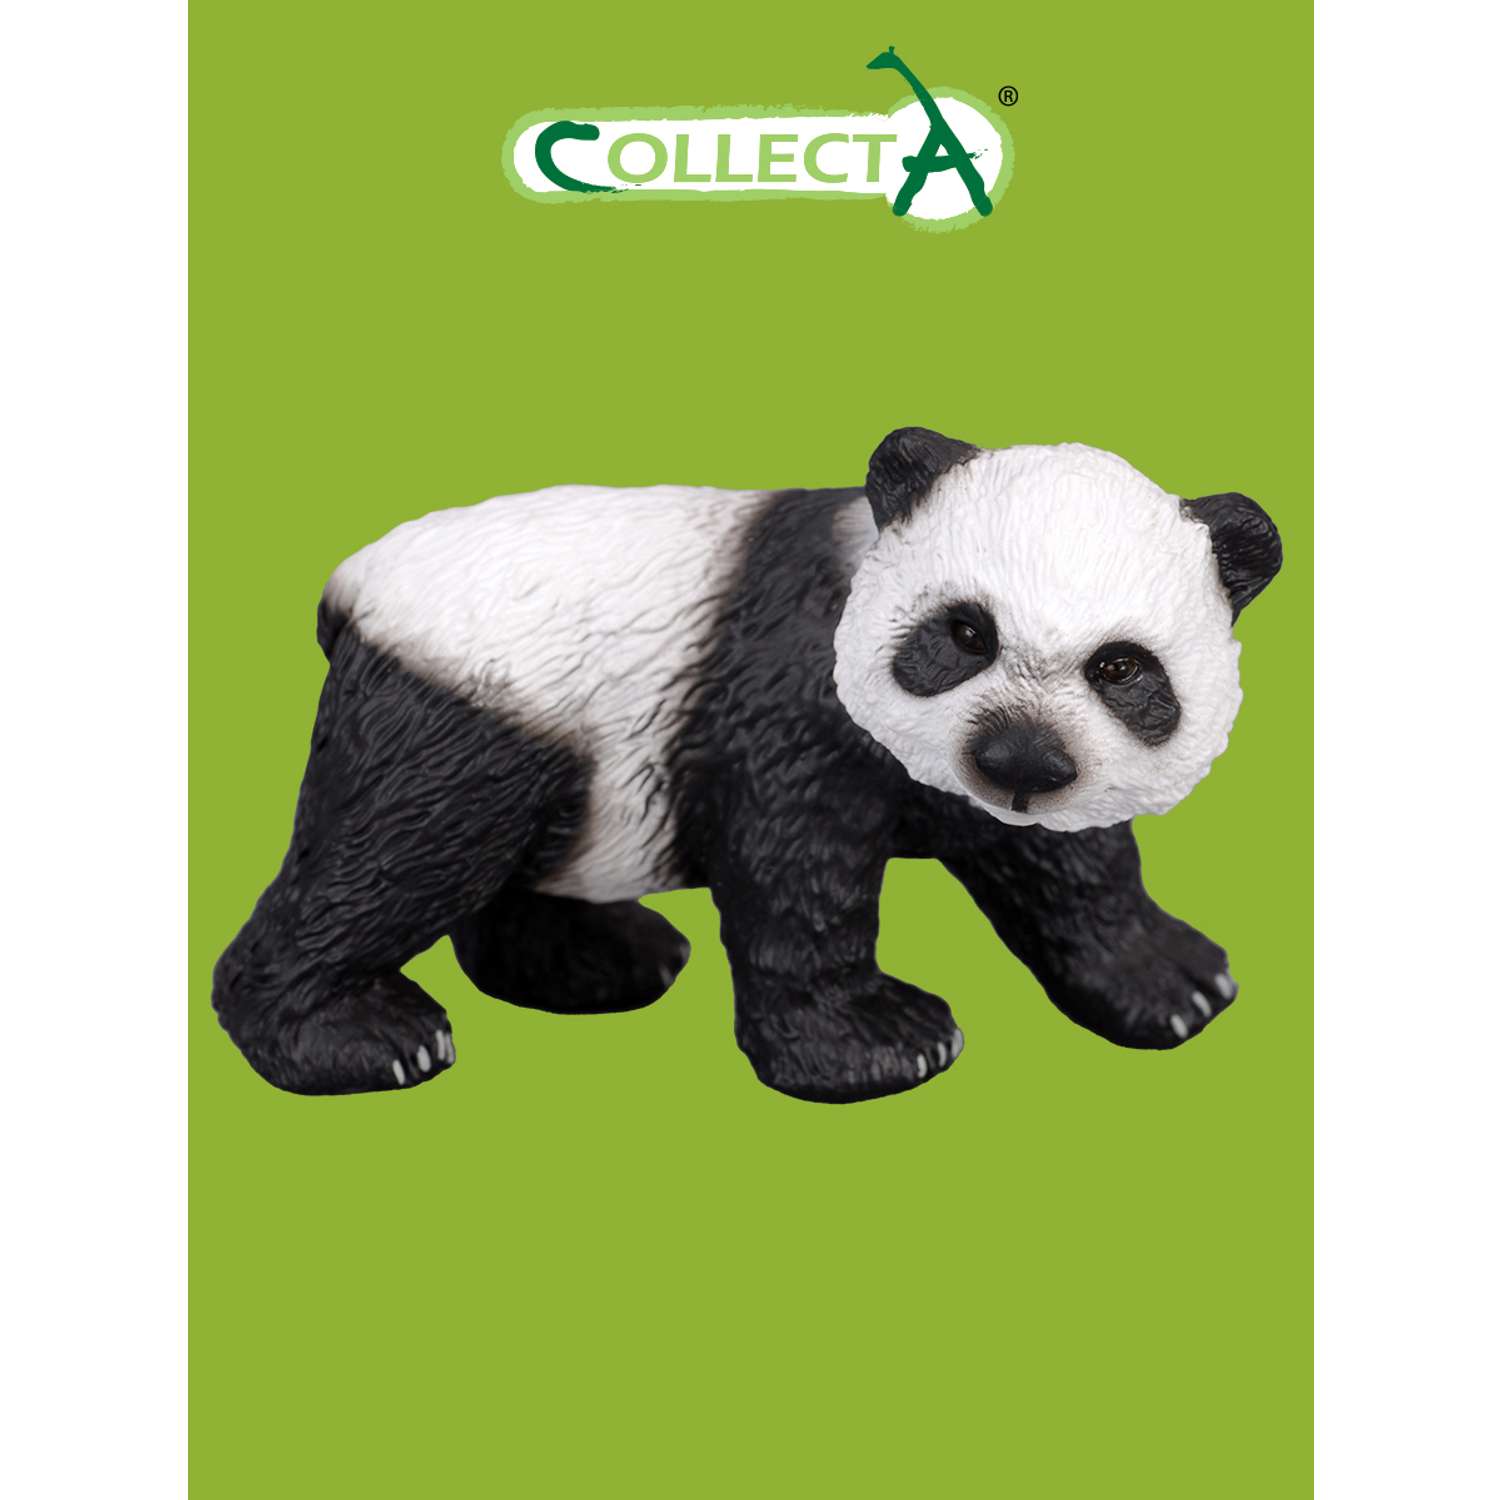 Игрушка Collecta Большая панда фигурка животного - фото 1